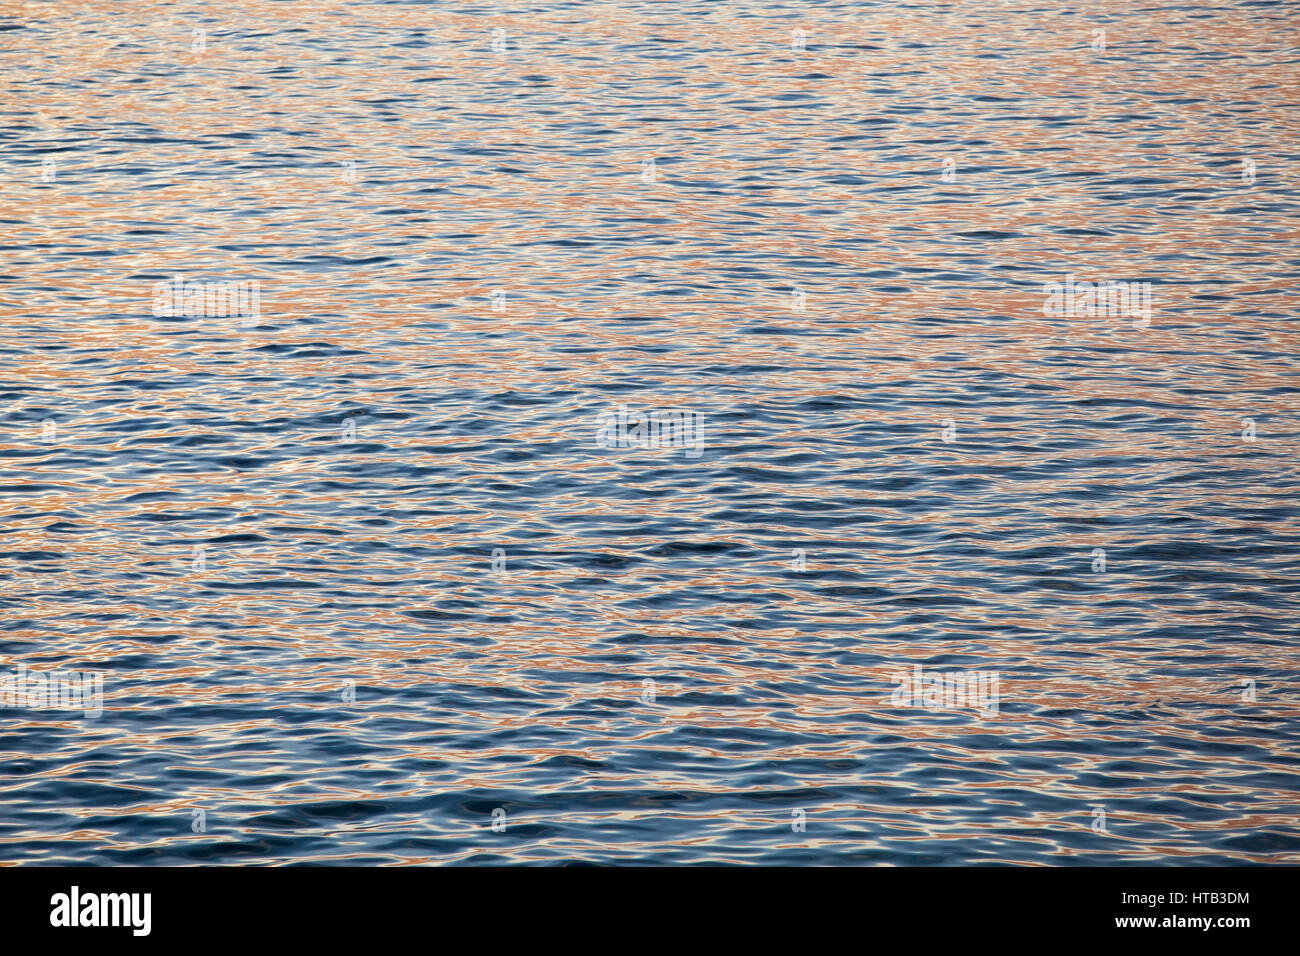 Les vagues de l'océan et la surface de l'eau au coucher du soleil avec la réflexion du soleil Banque D'Images